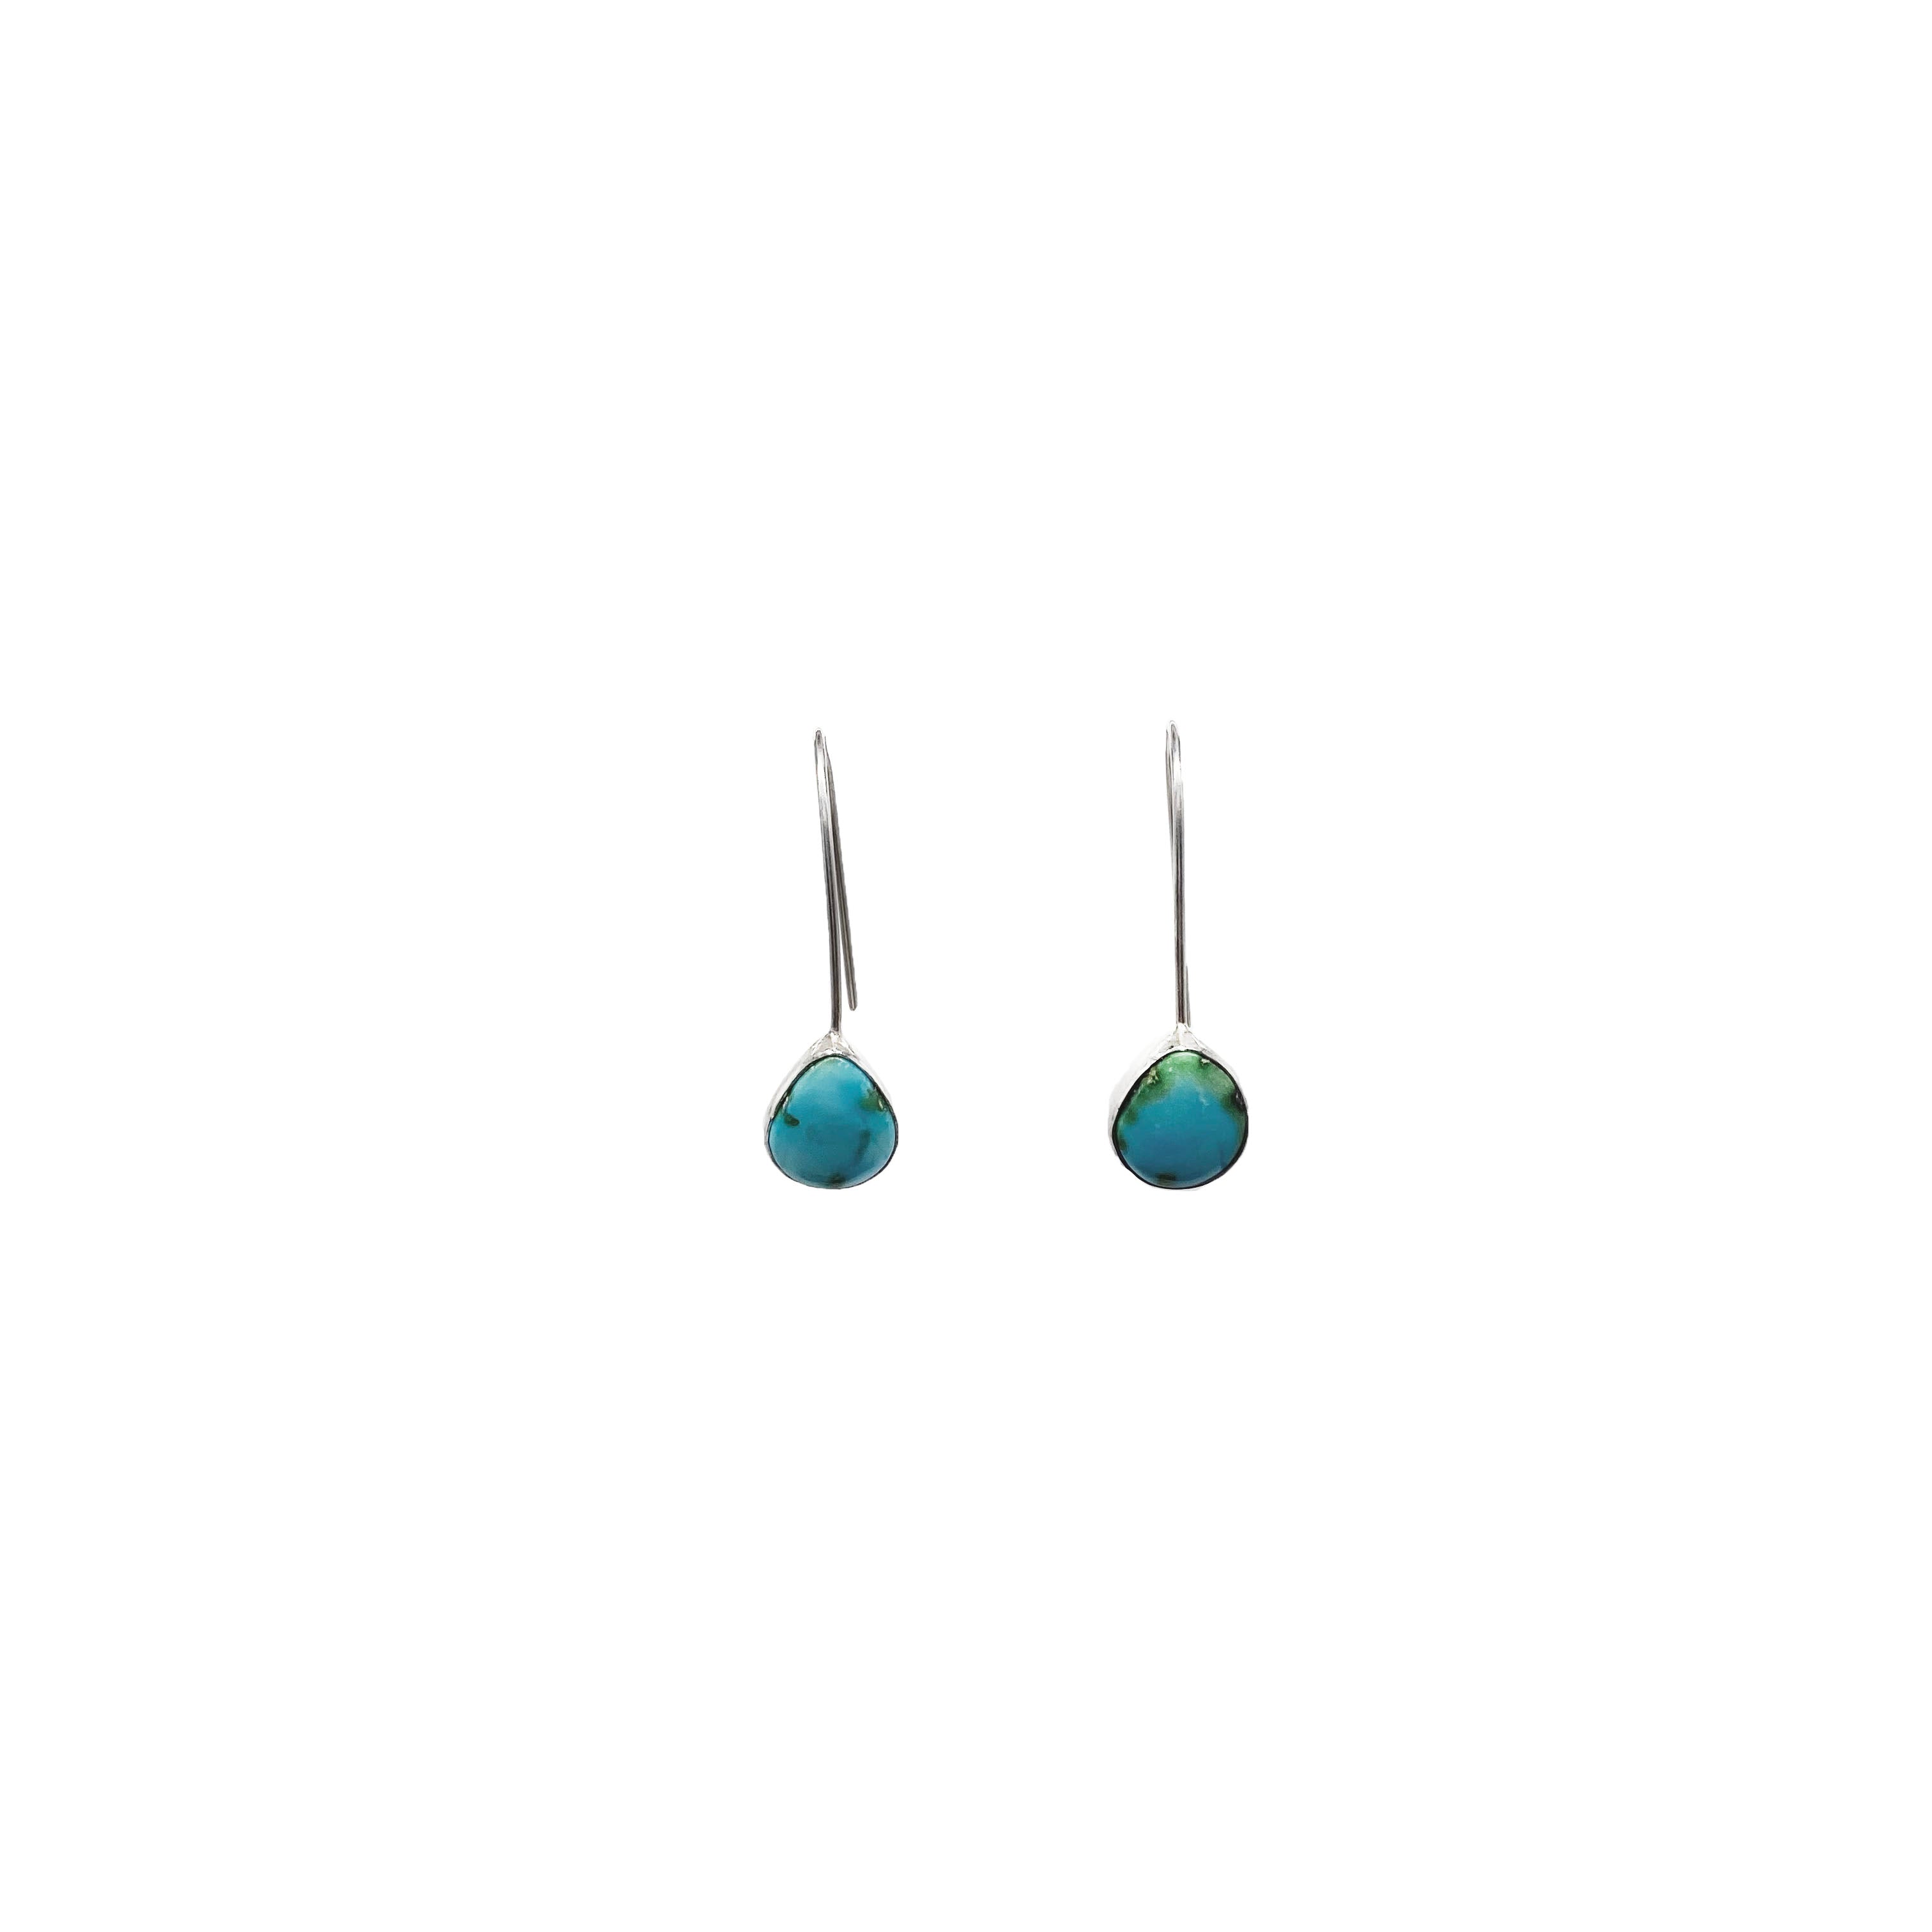 Gerties earrings